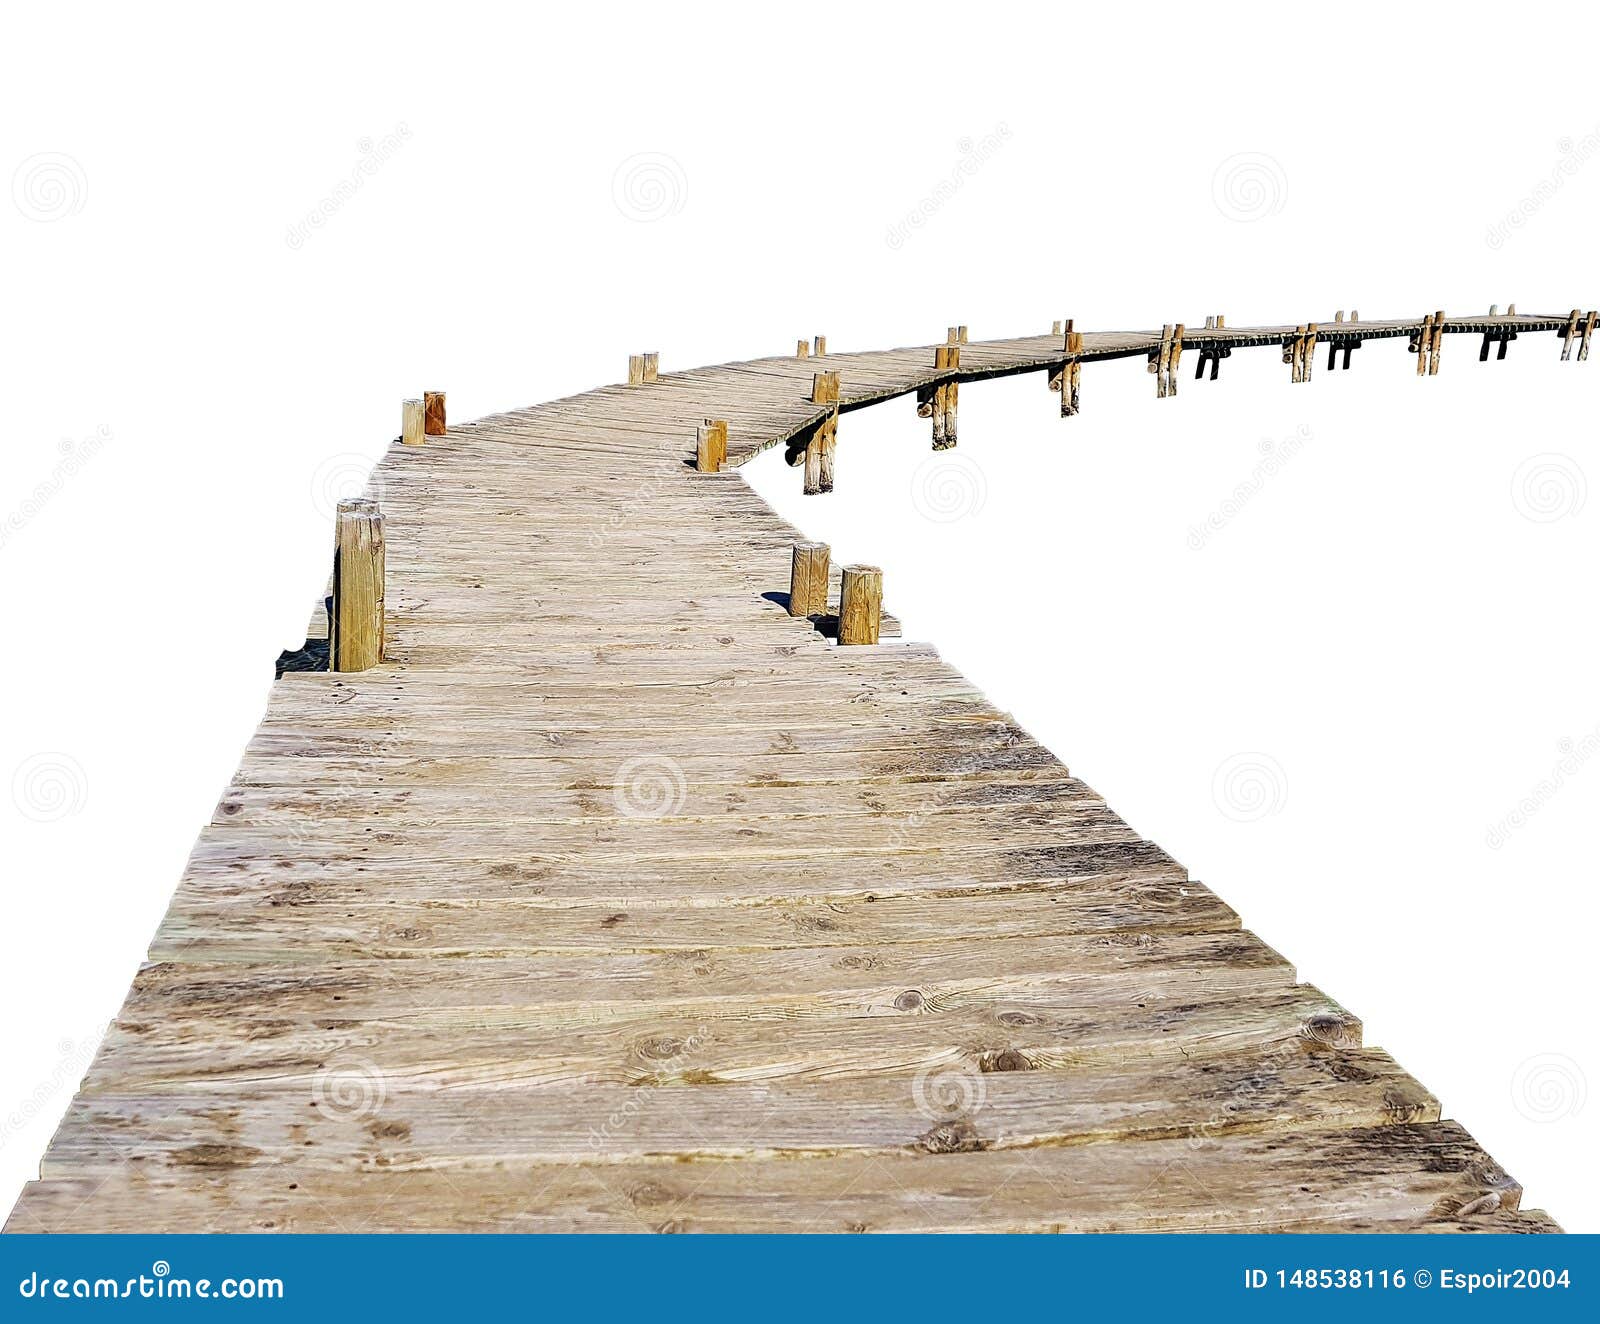 Η ξύλινη γέφυρα μονοπατιών από παλαιό συνδέεται τα ξυλοπόδαρα στο άσπρο υπόβαθρο. Η ξύλινη γέφυρα μονοπατιών από παλαιό συνδέεται τα ξυλοπόδαρα που απομονώνονται στο άσπρο υπόβαθρο